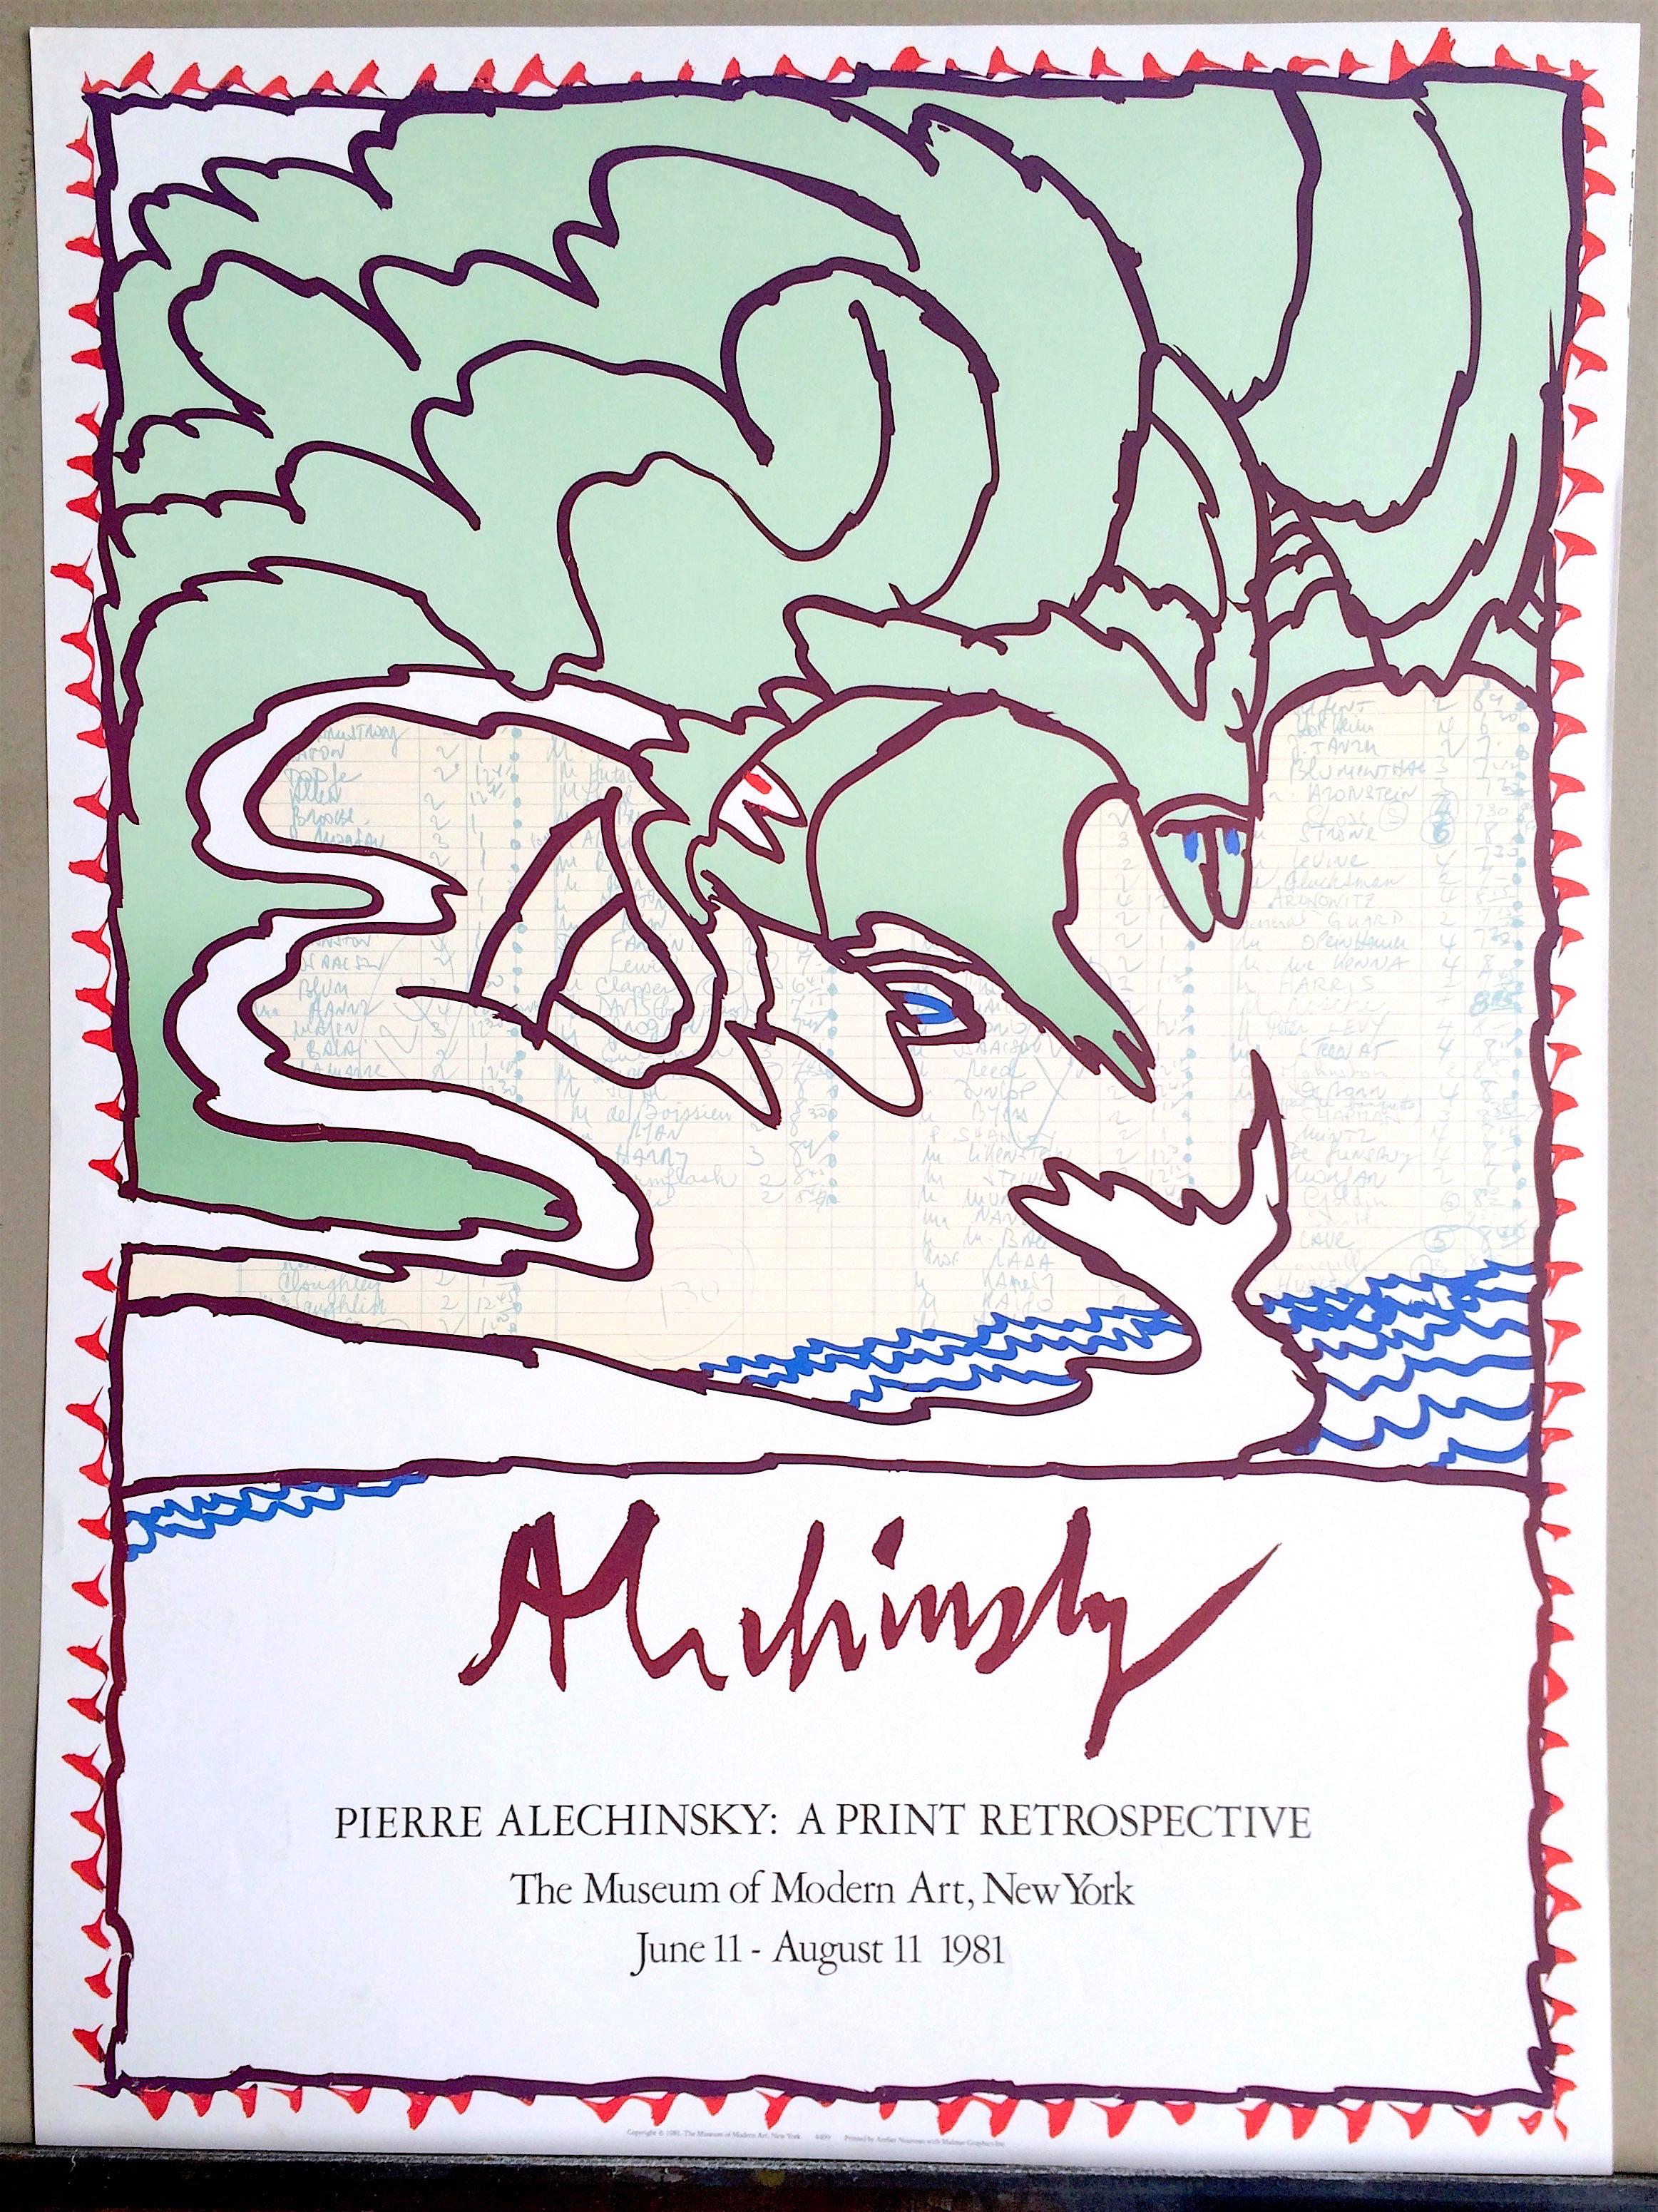 MOMA-Druck Retrospektive 1981 Original-Lithographie-Poster Mintgrün, Blaue Wellen – Print von Pierre Alechinsky